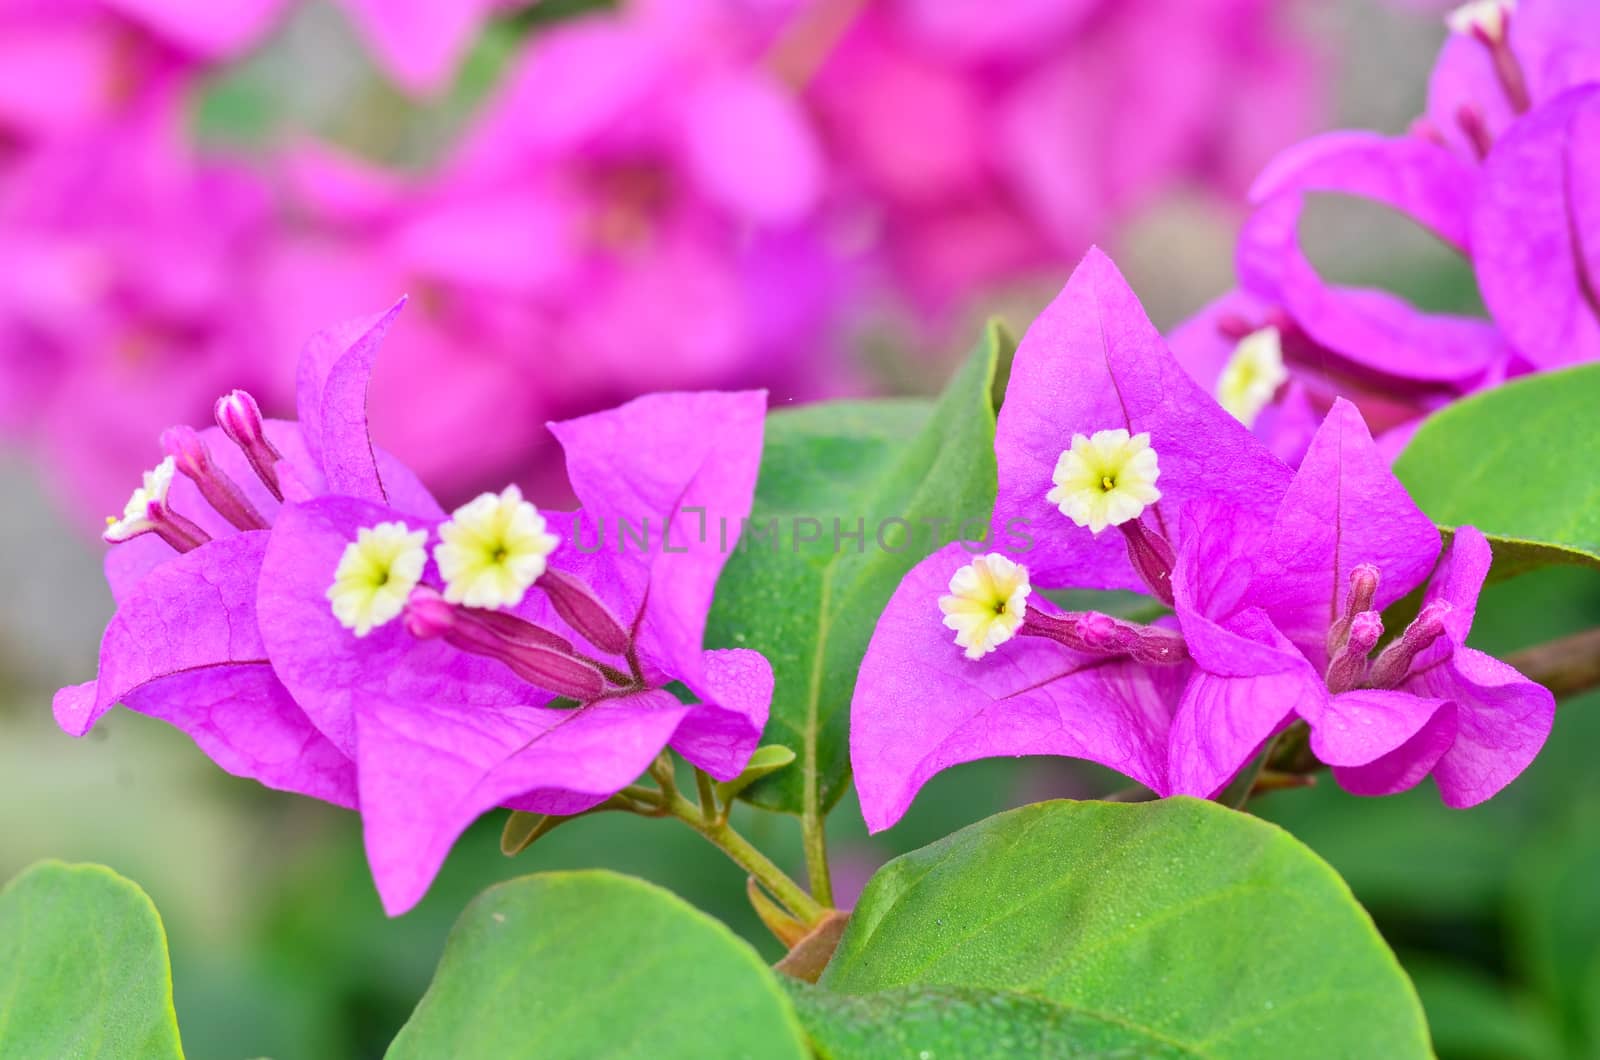 Beautyful Bougainvillea flowers